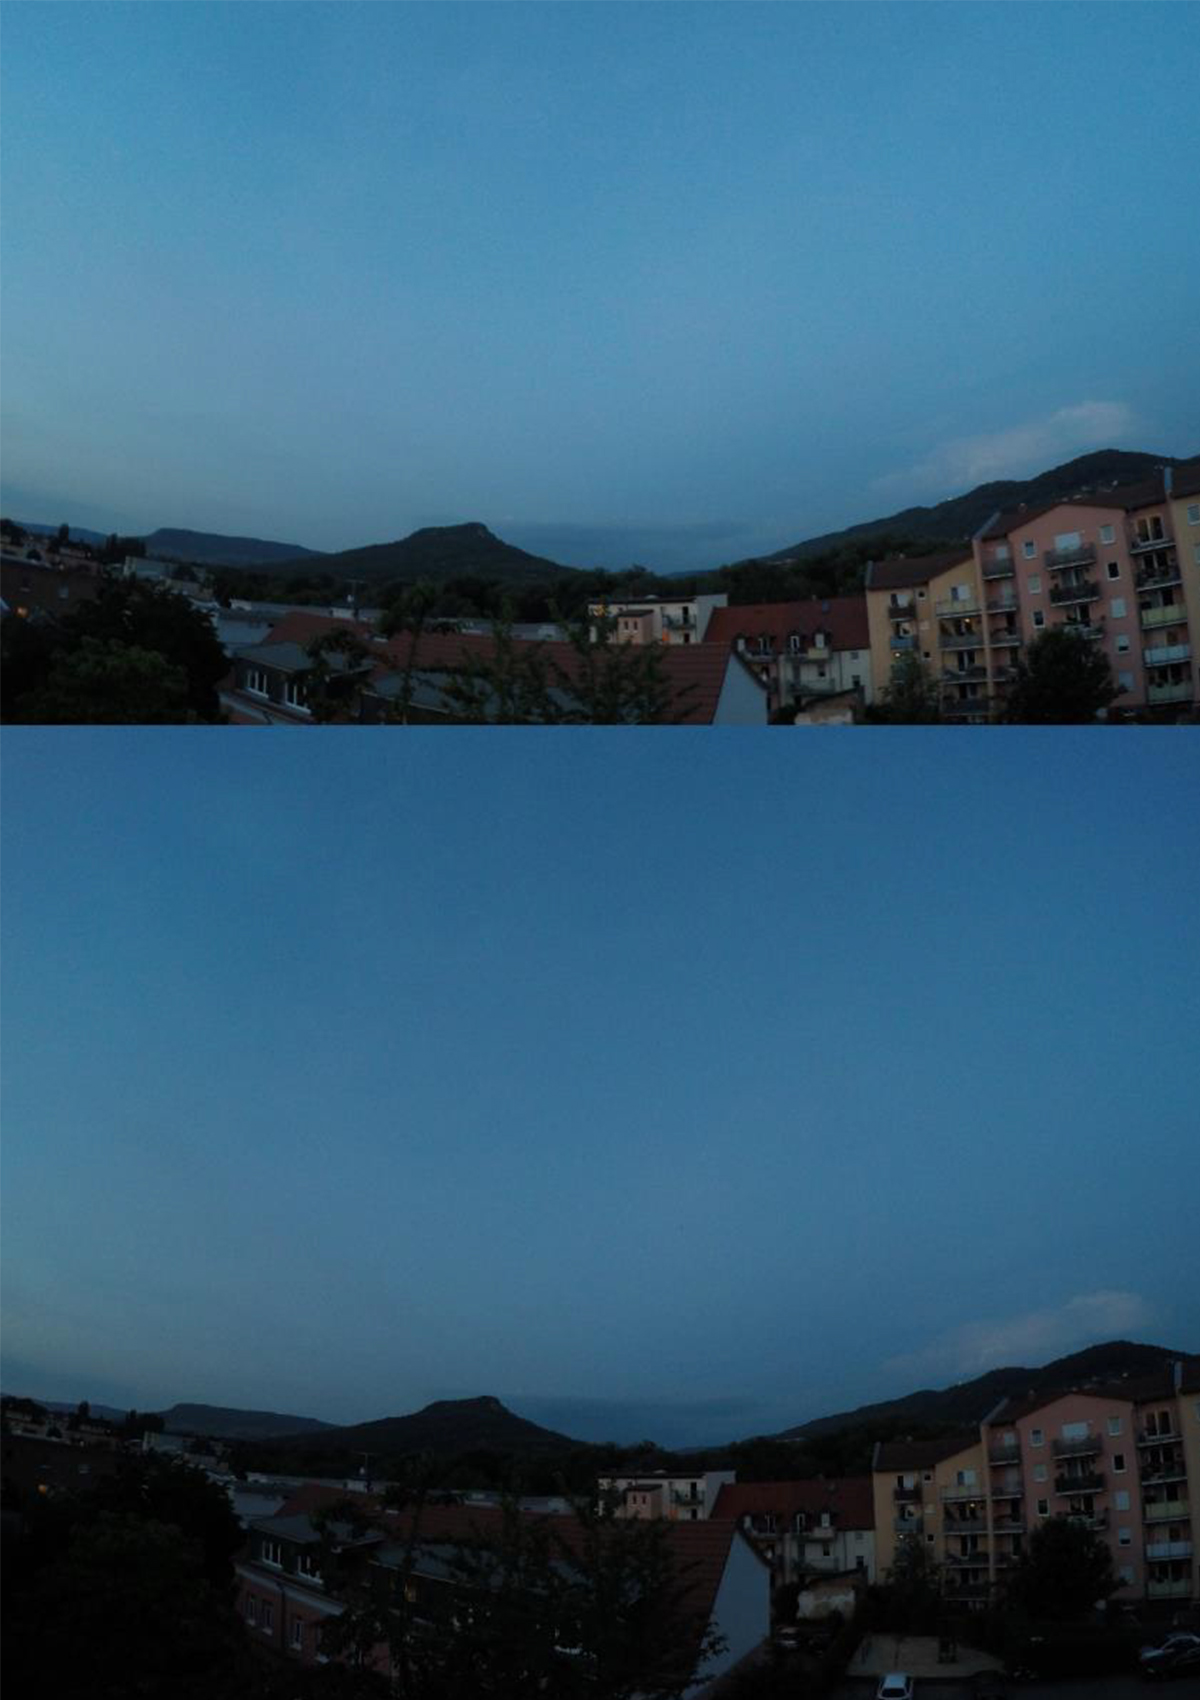 Stadt bei Nacht - mit der GoPro und mit und ohne Spotmeter fotografiert